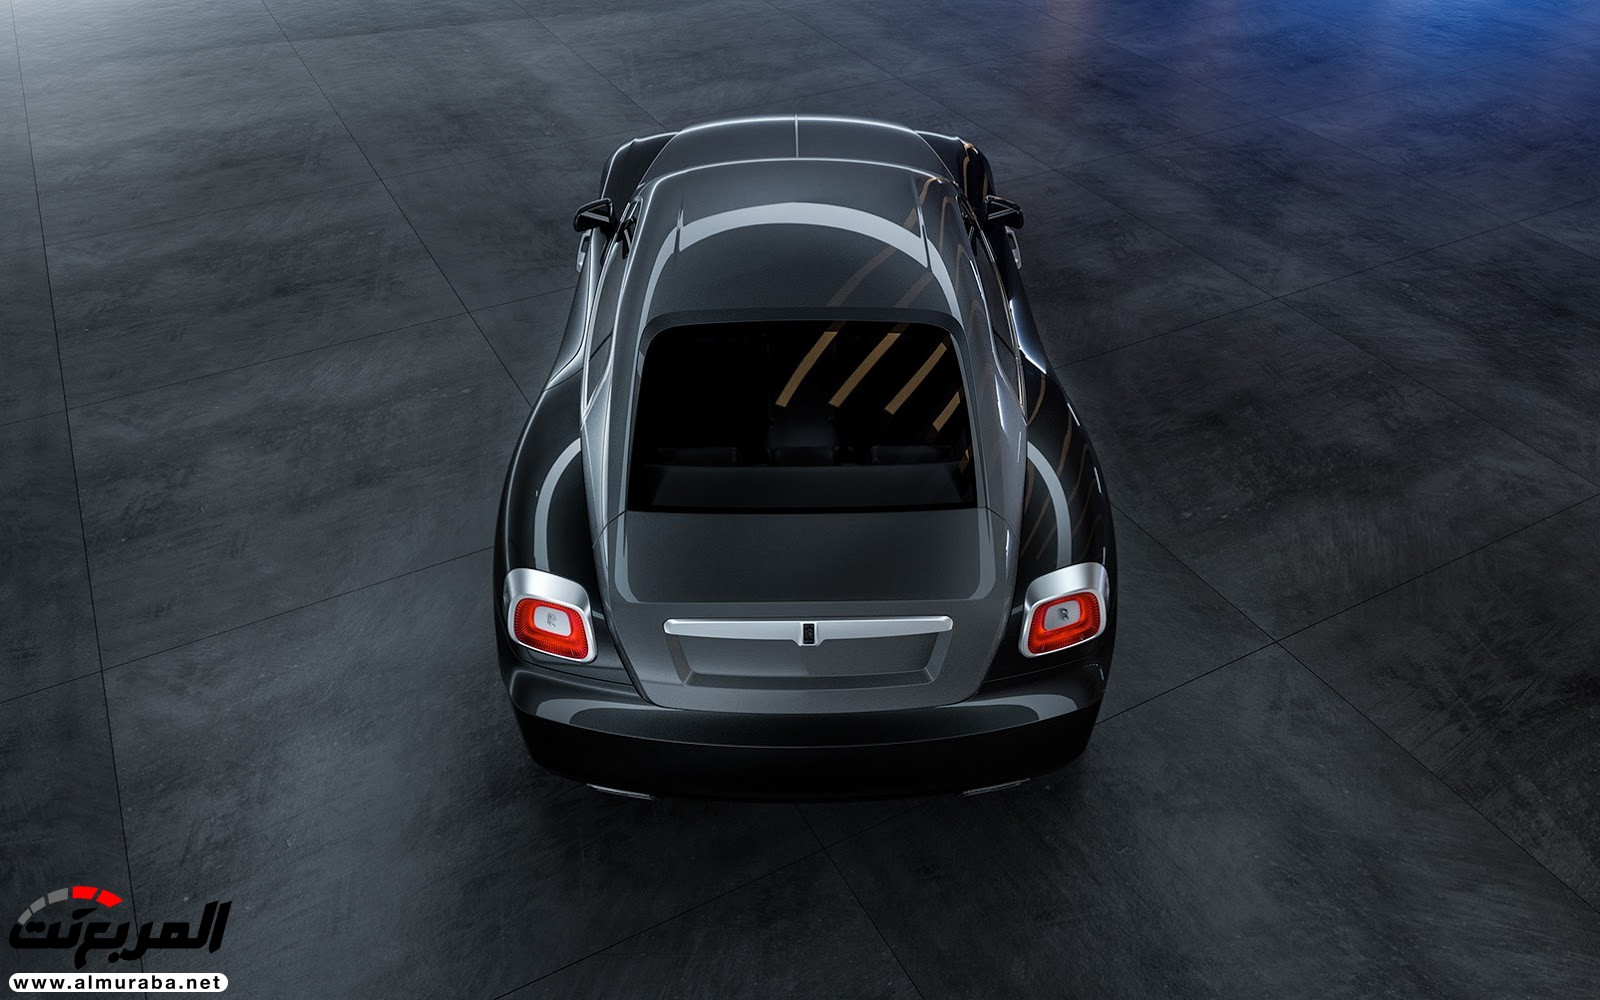 "صور افتراضية" لما يمكن أن تبدو عليه "رولز رويس" رايث كوبيه 2020 Rolls-Royce Wraith Coupe 56